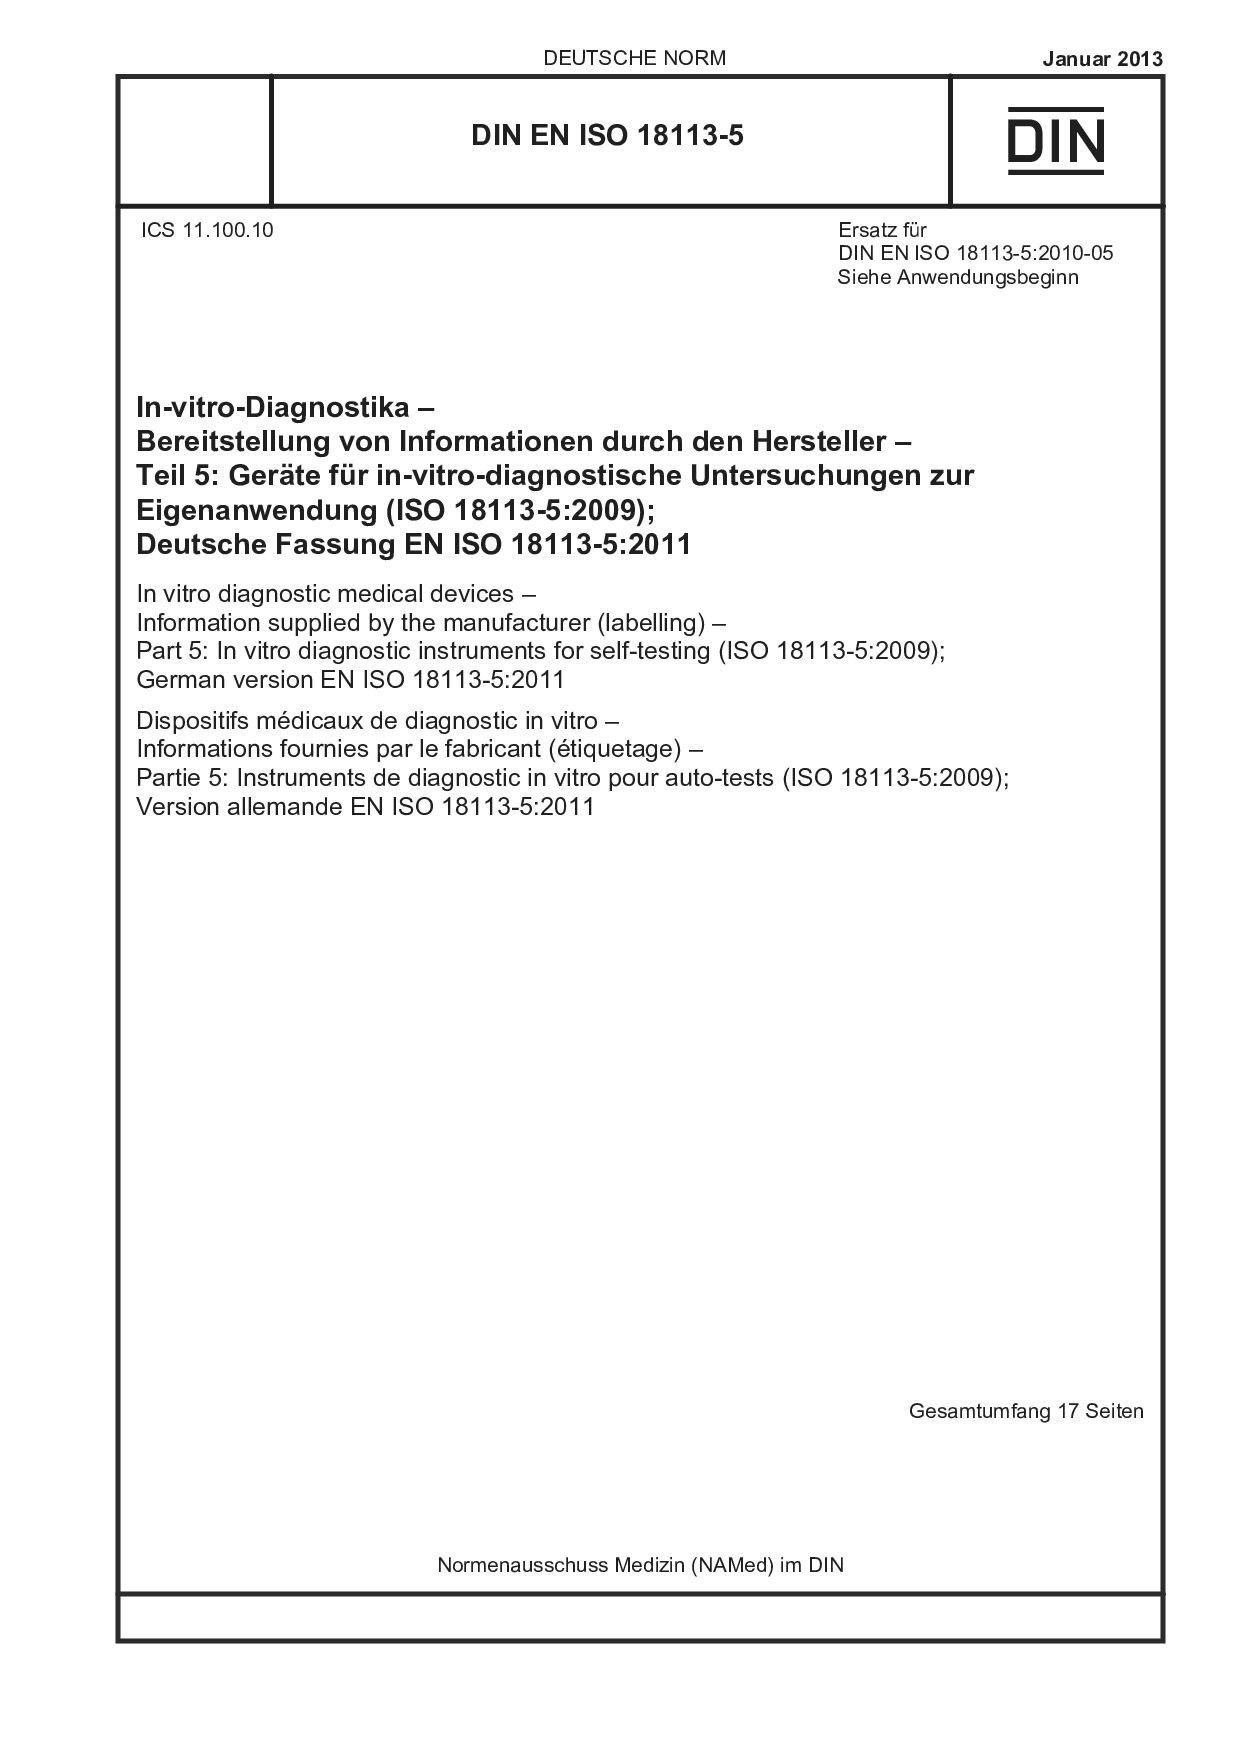 DIN EN ISO 18113-5:2013